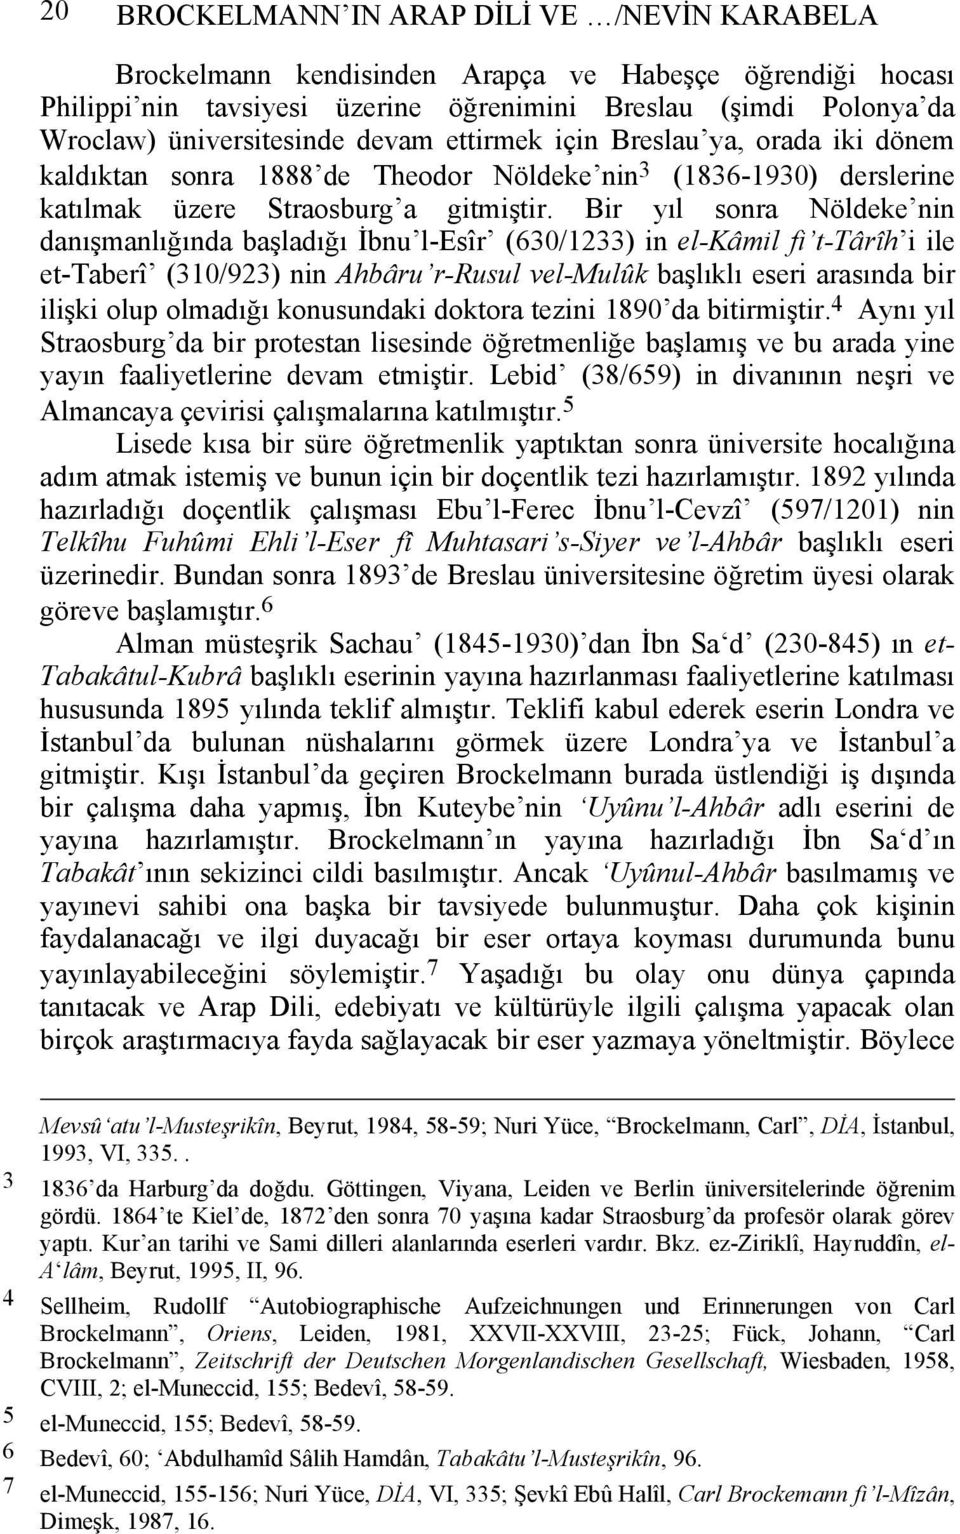 Bir yıl sonra Nöldeke nin danışmanlığında başladığı İbnu l-esîr (630/1233) in el-kâmil fi t-târîh i ile et-taberî (310/923) nin Ahbâru r-rusul vel-mulûk başlıklı eseri arasında bir ilişki olup